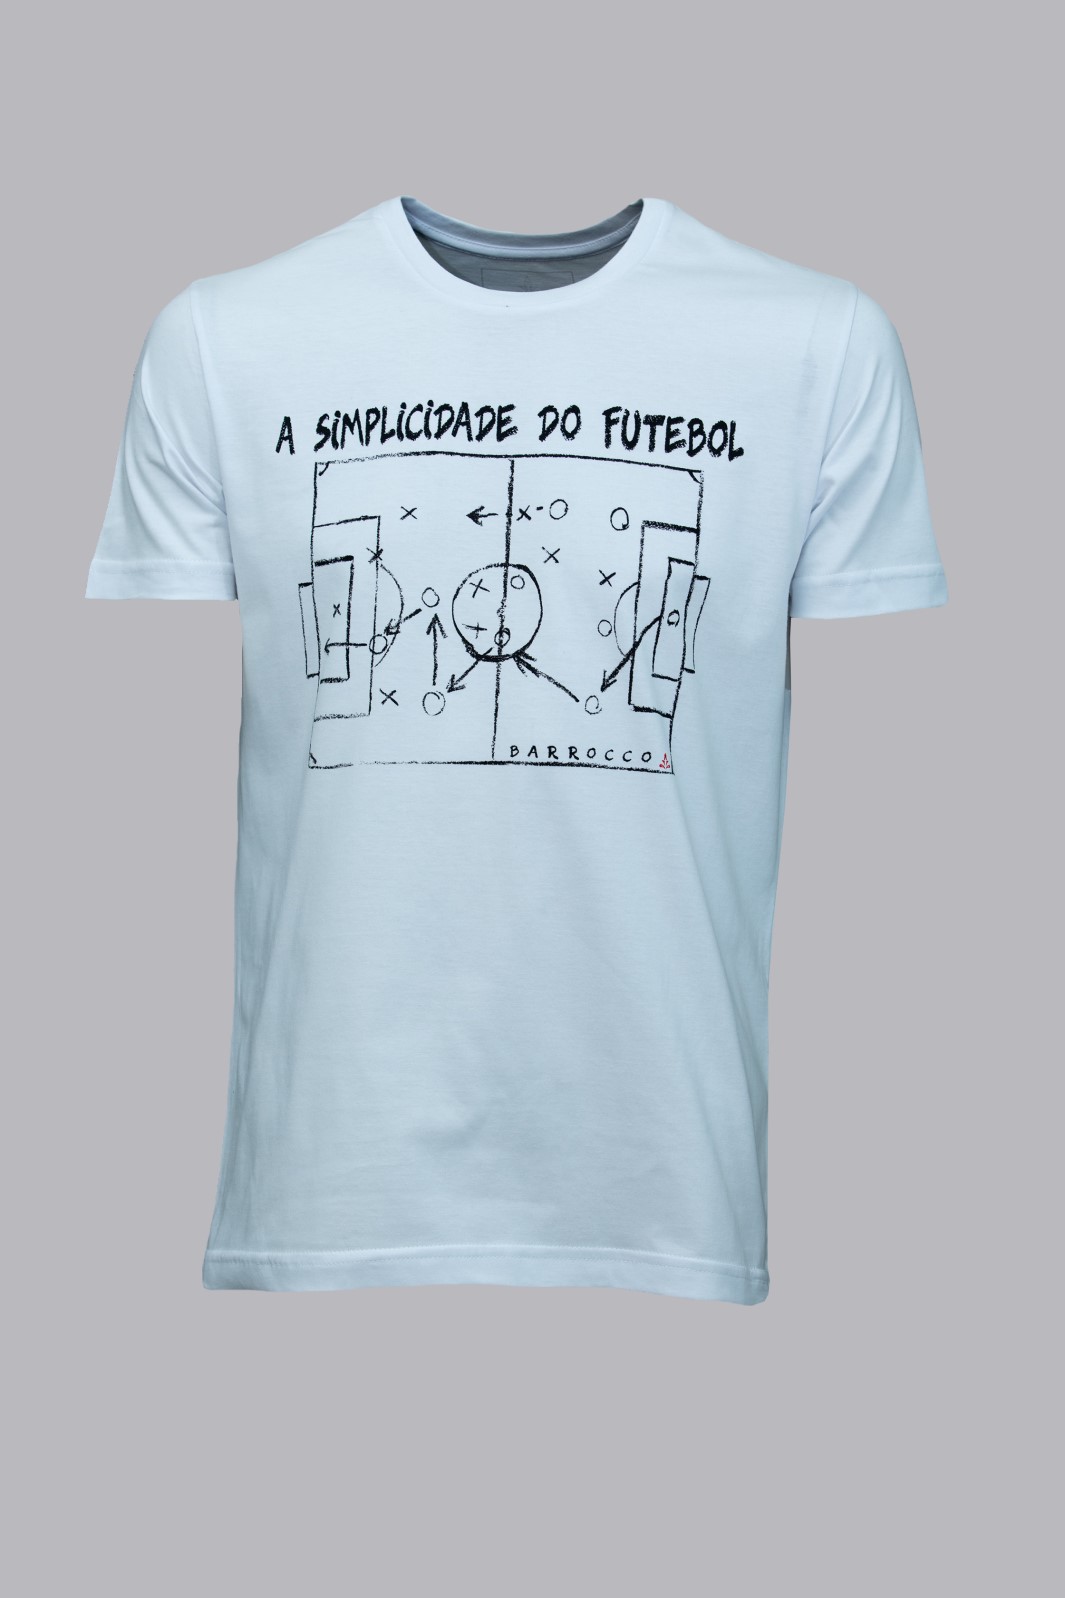 Camiseta Barrocco Simplicidade do Futebol - Foto 1